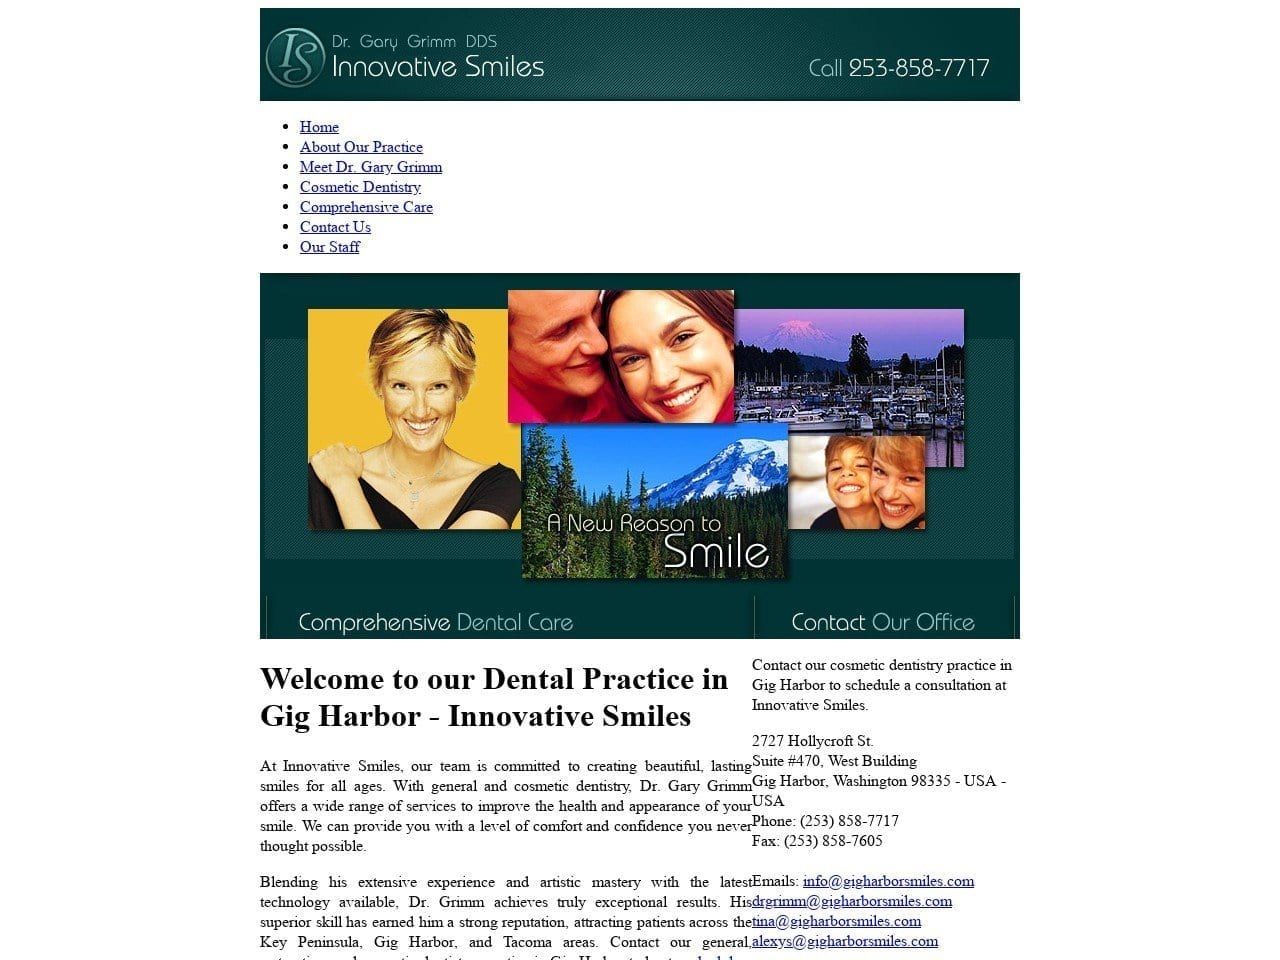 Innovative Smiles Website Screenshot from gigharborsmiles.com